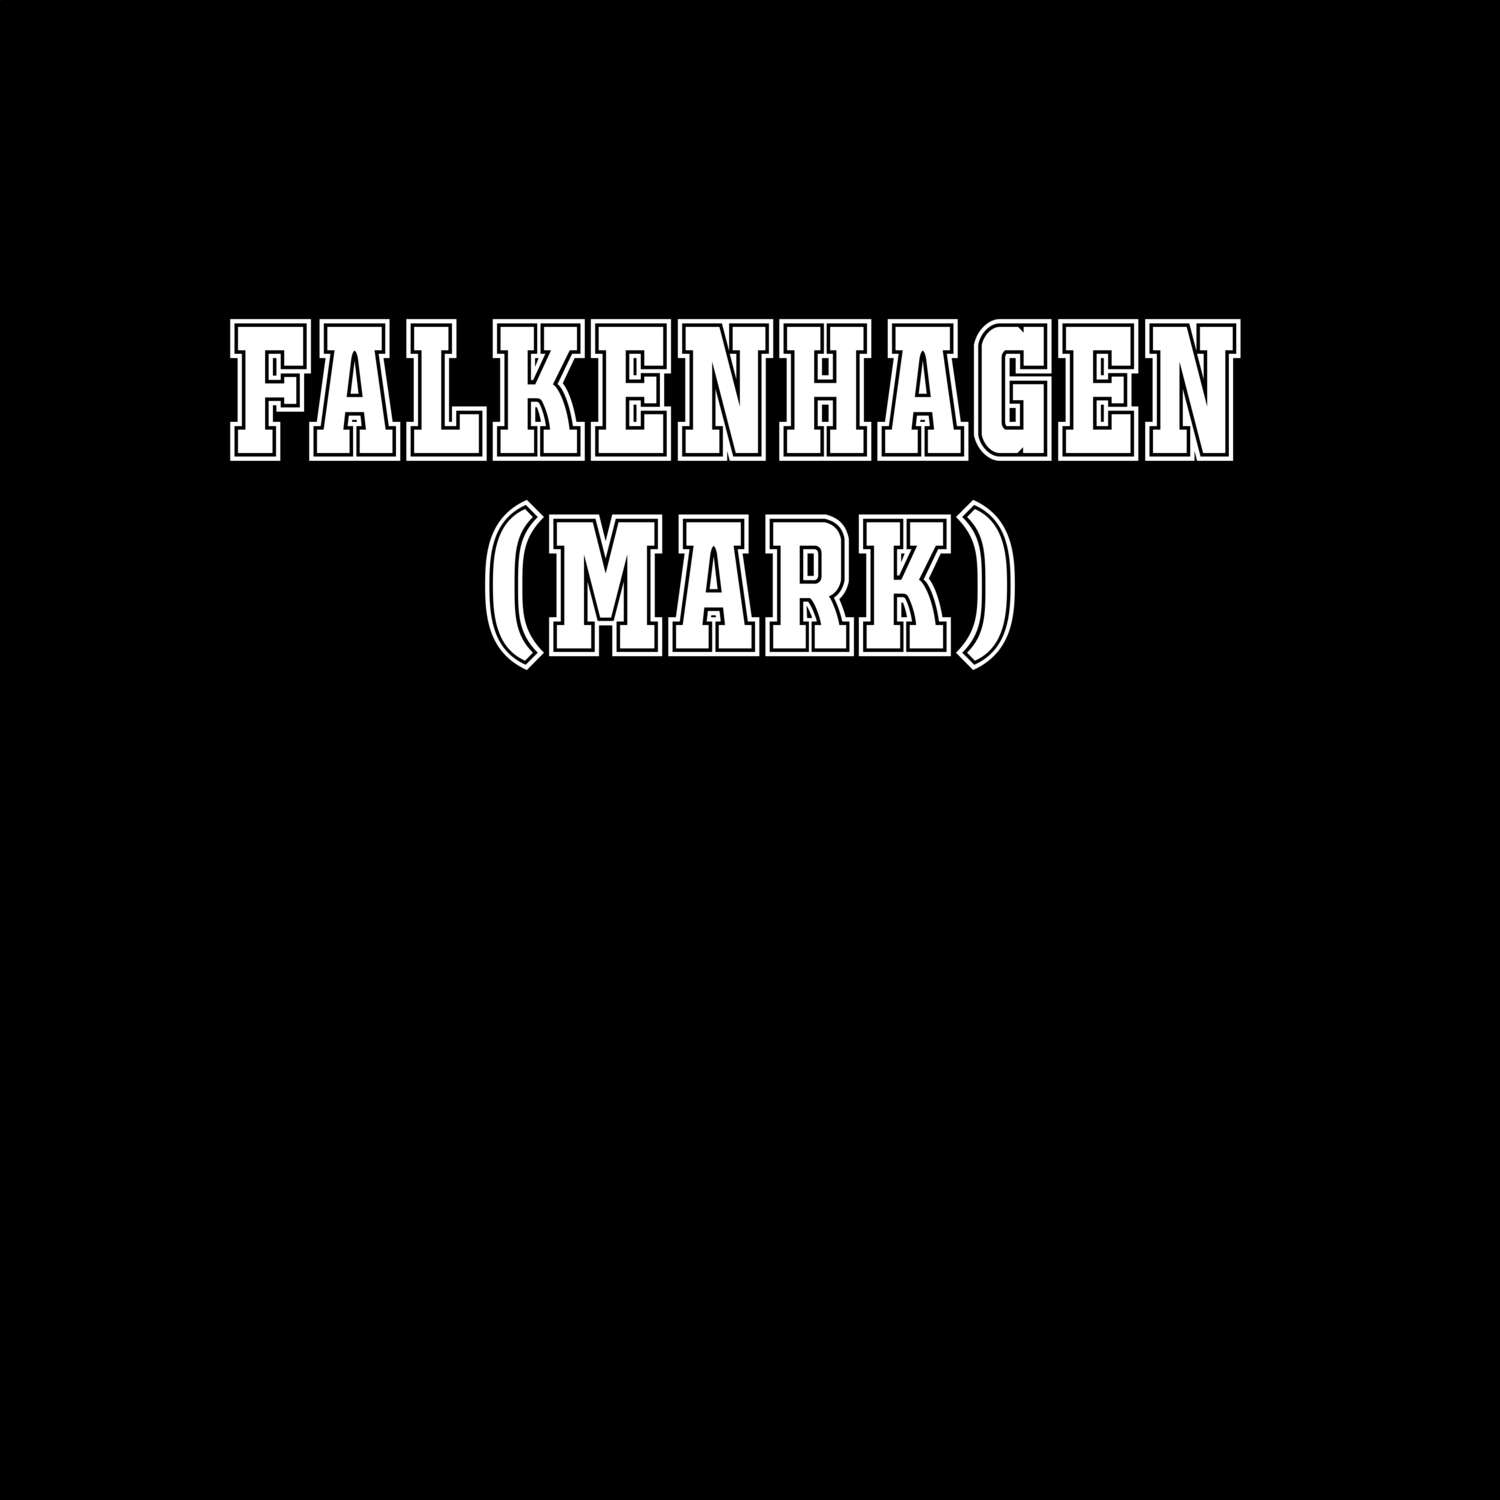 Falkenhagen (Mark) T-Shirt »Classic«